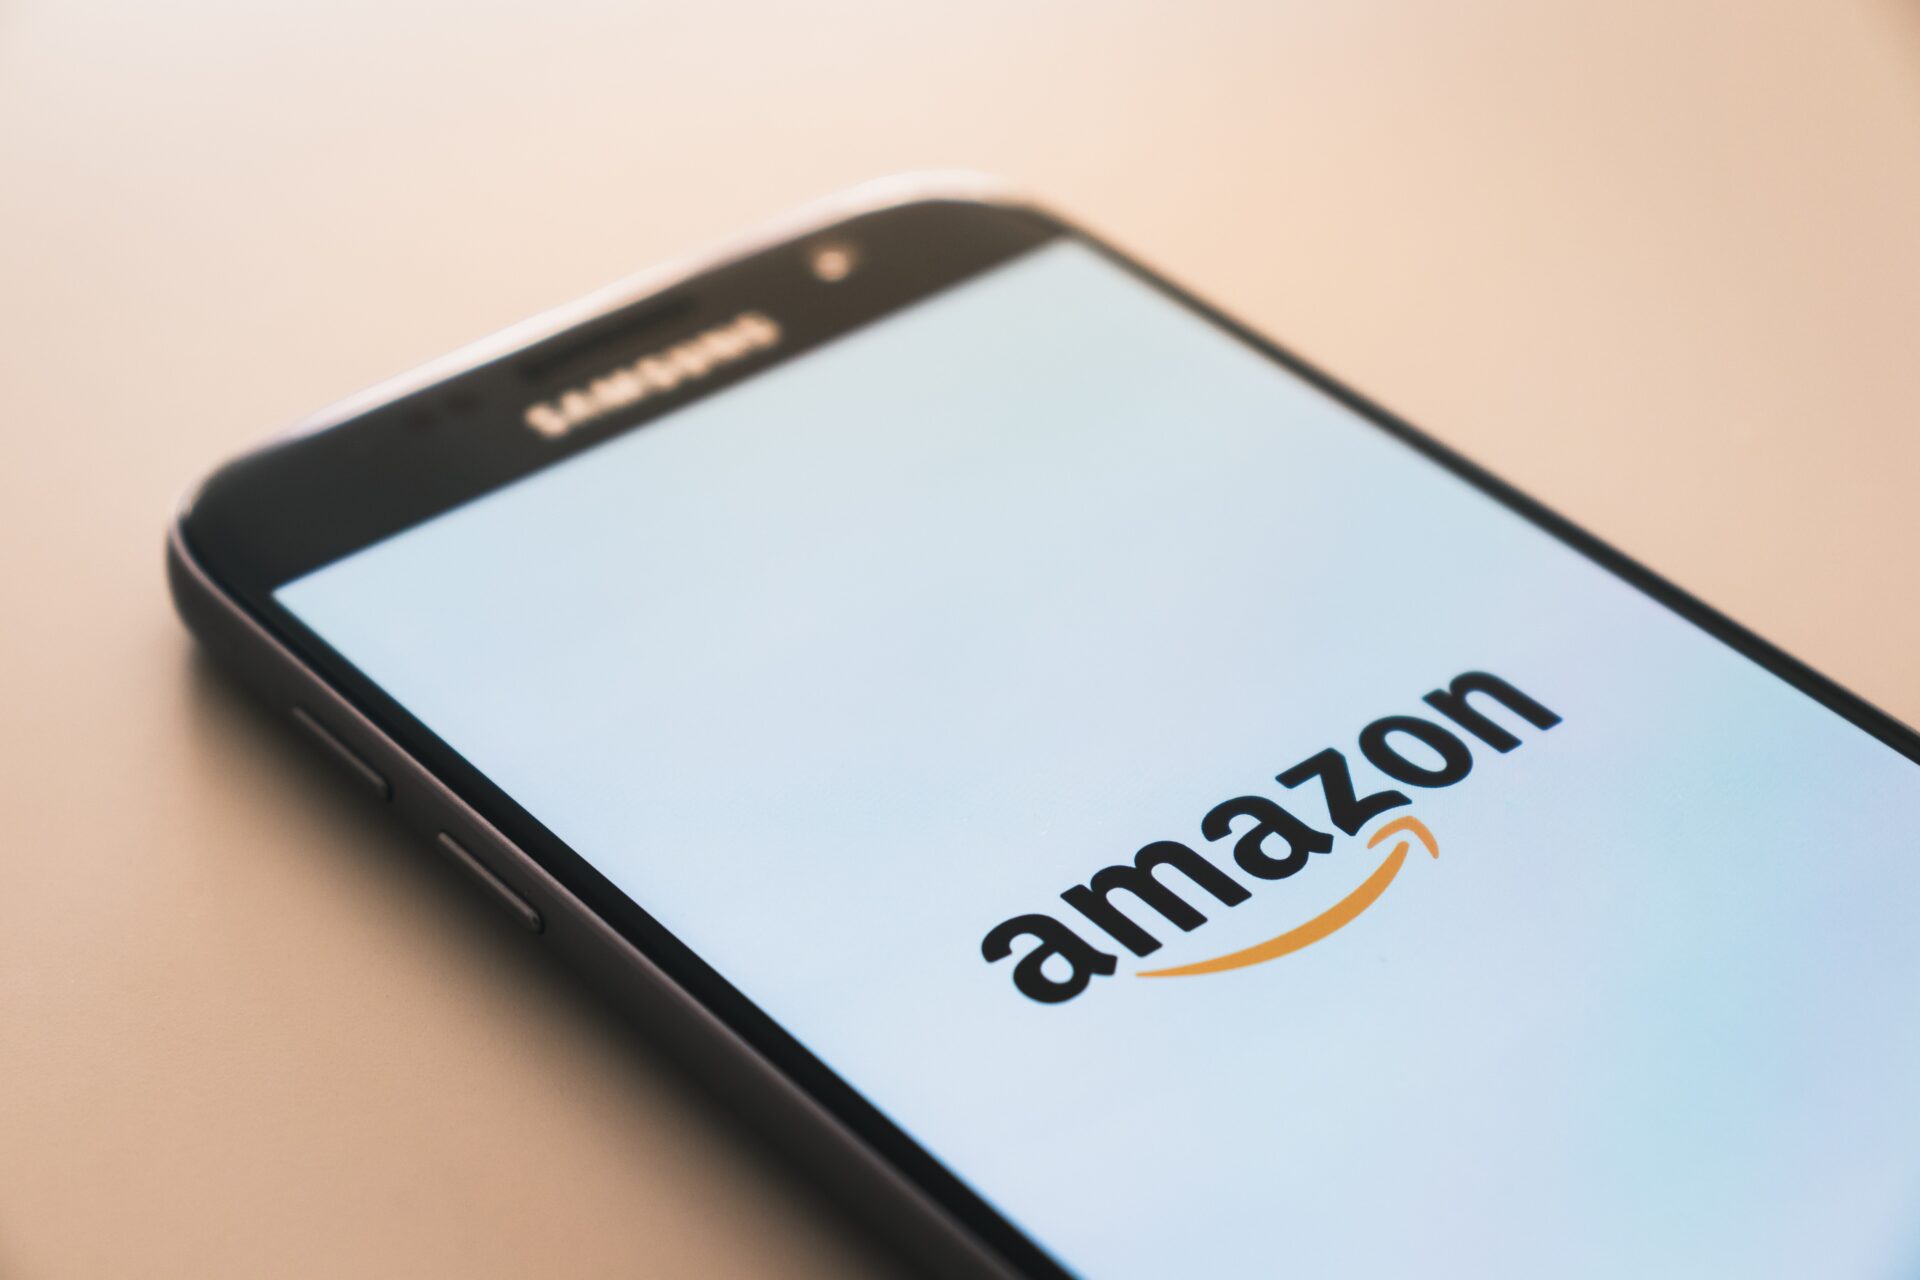 La empresa anunció el lanzamiento oficial de Amazon Q, un innovador asistente que competirá directamente con ChatGPT